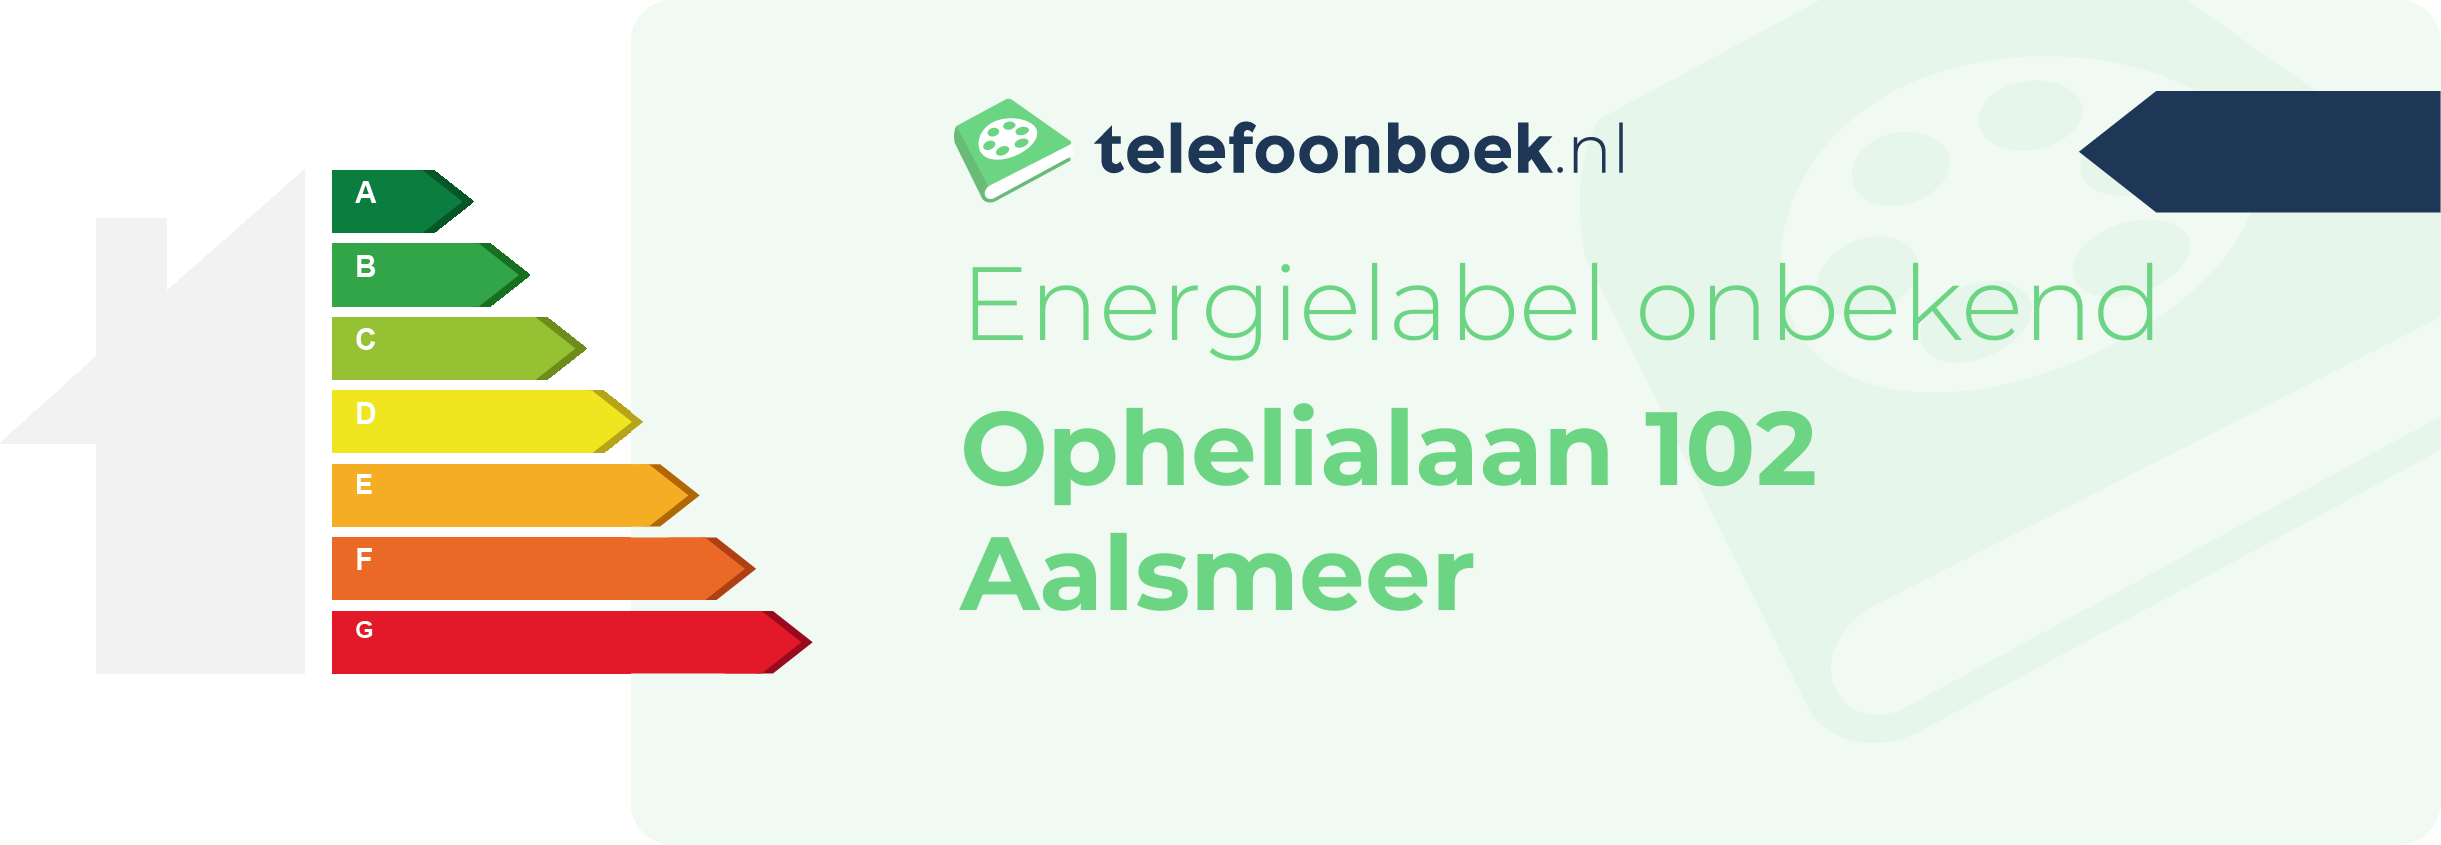 Energielabel Ophelialaan 102 Aalsmeer